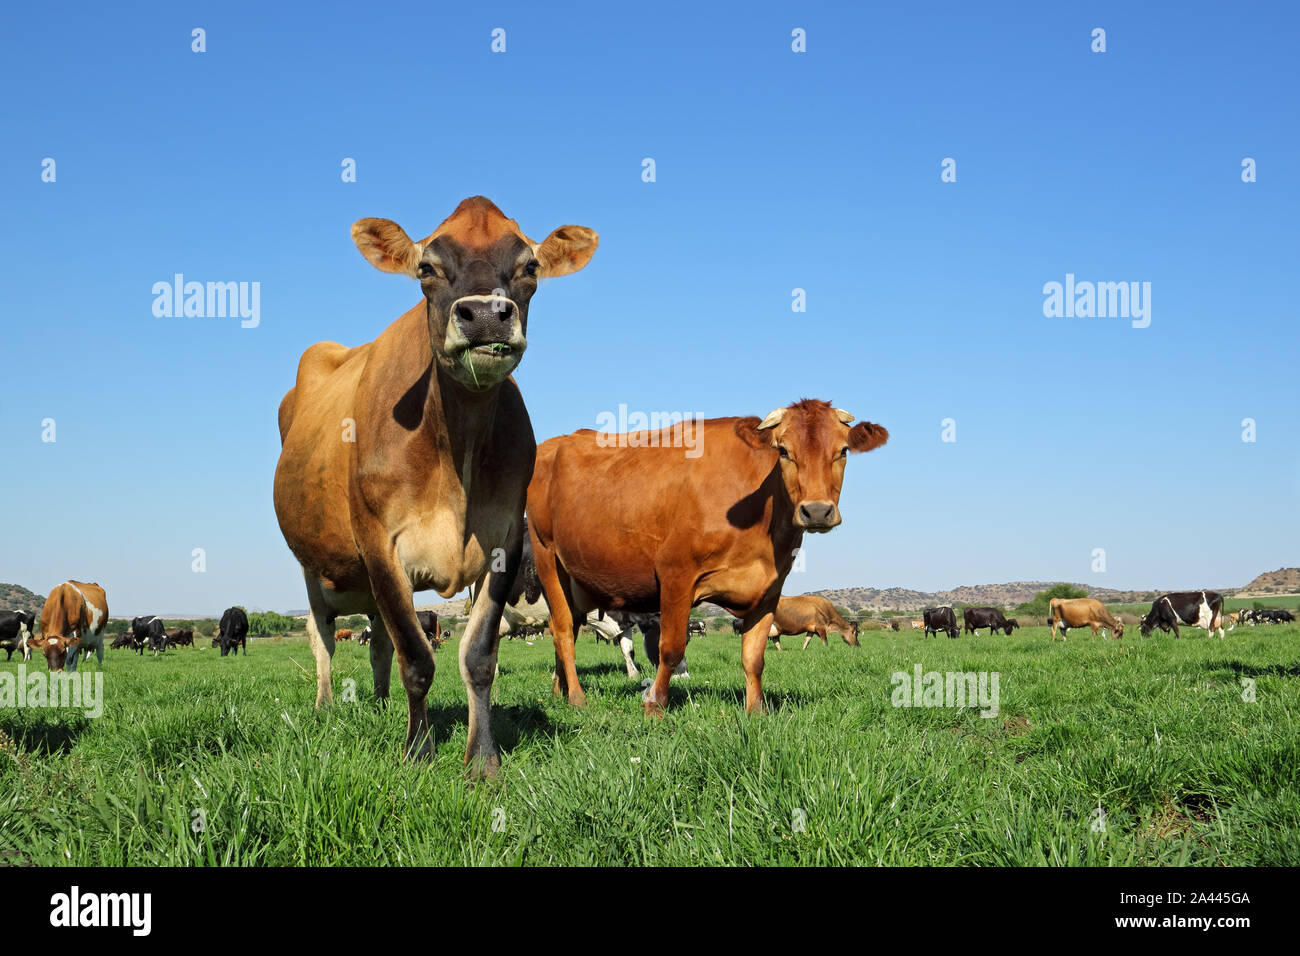 Faible angle de vue des vaches laitières sur pâturage pâturage vert luxuriant contre un ciel bleu clair Banque D'Images